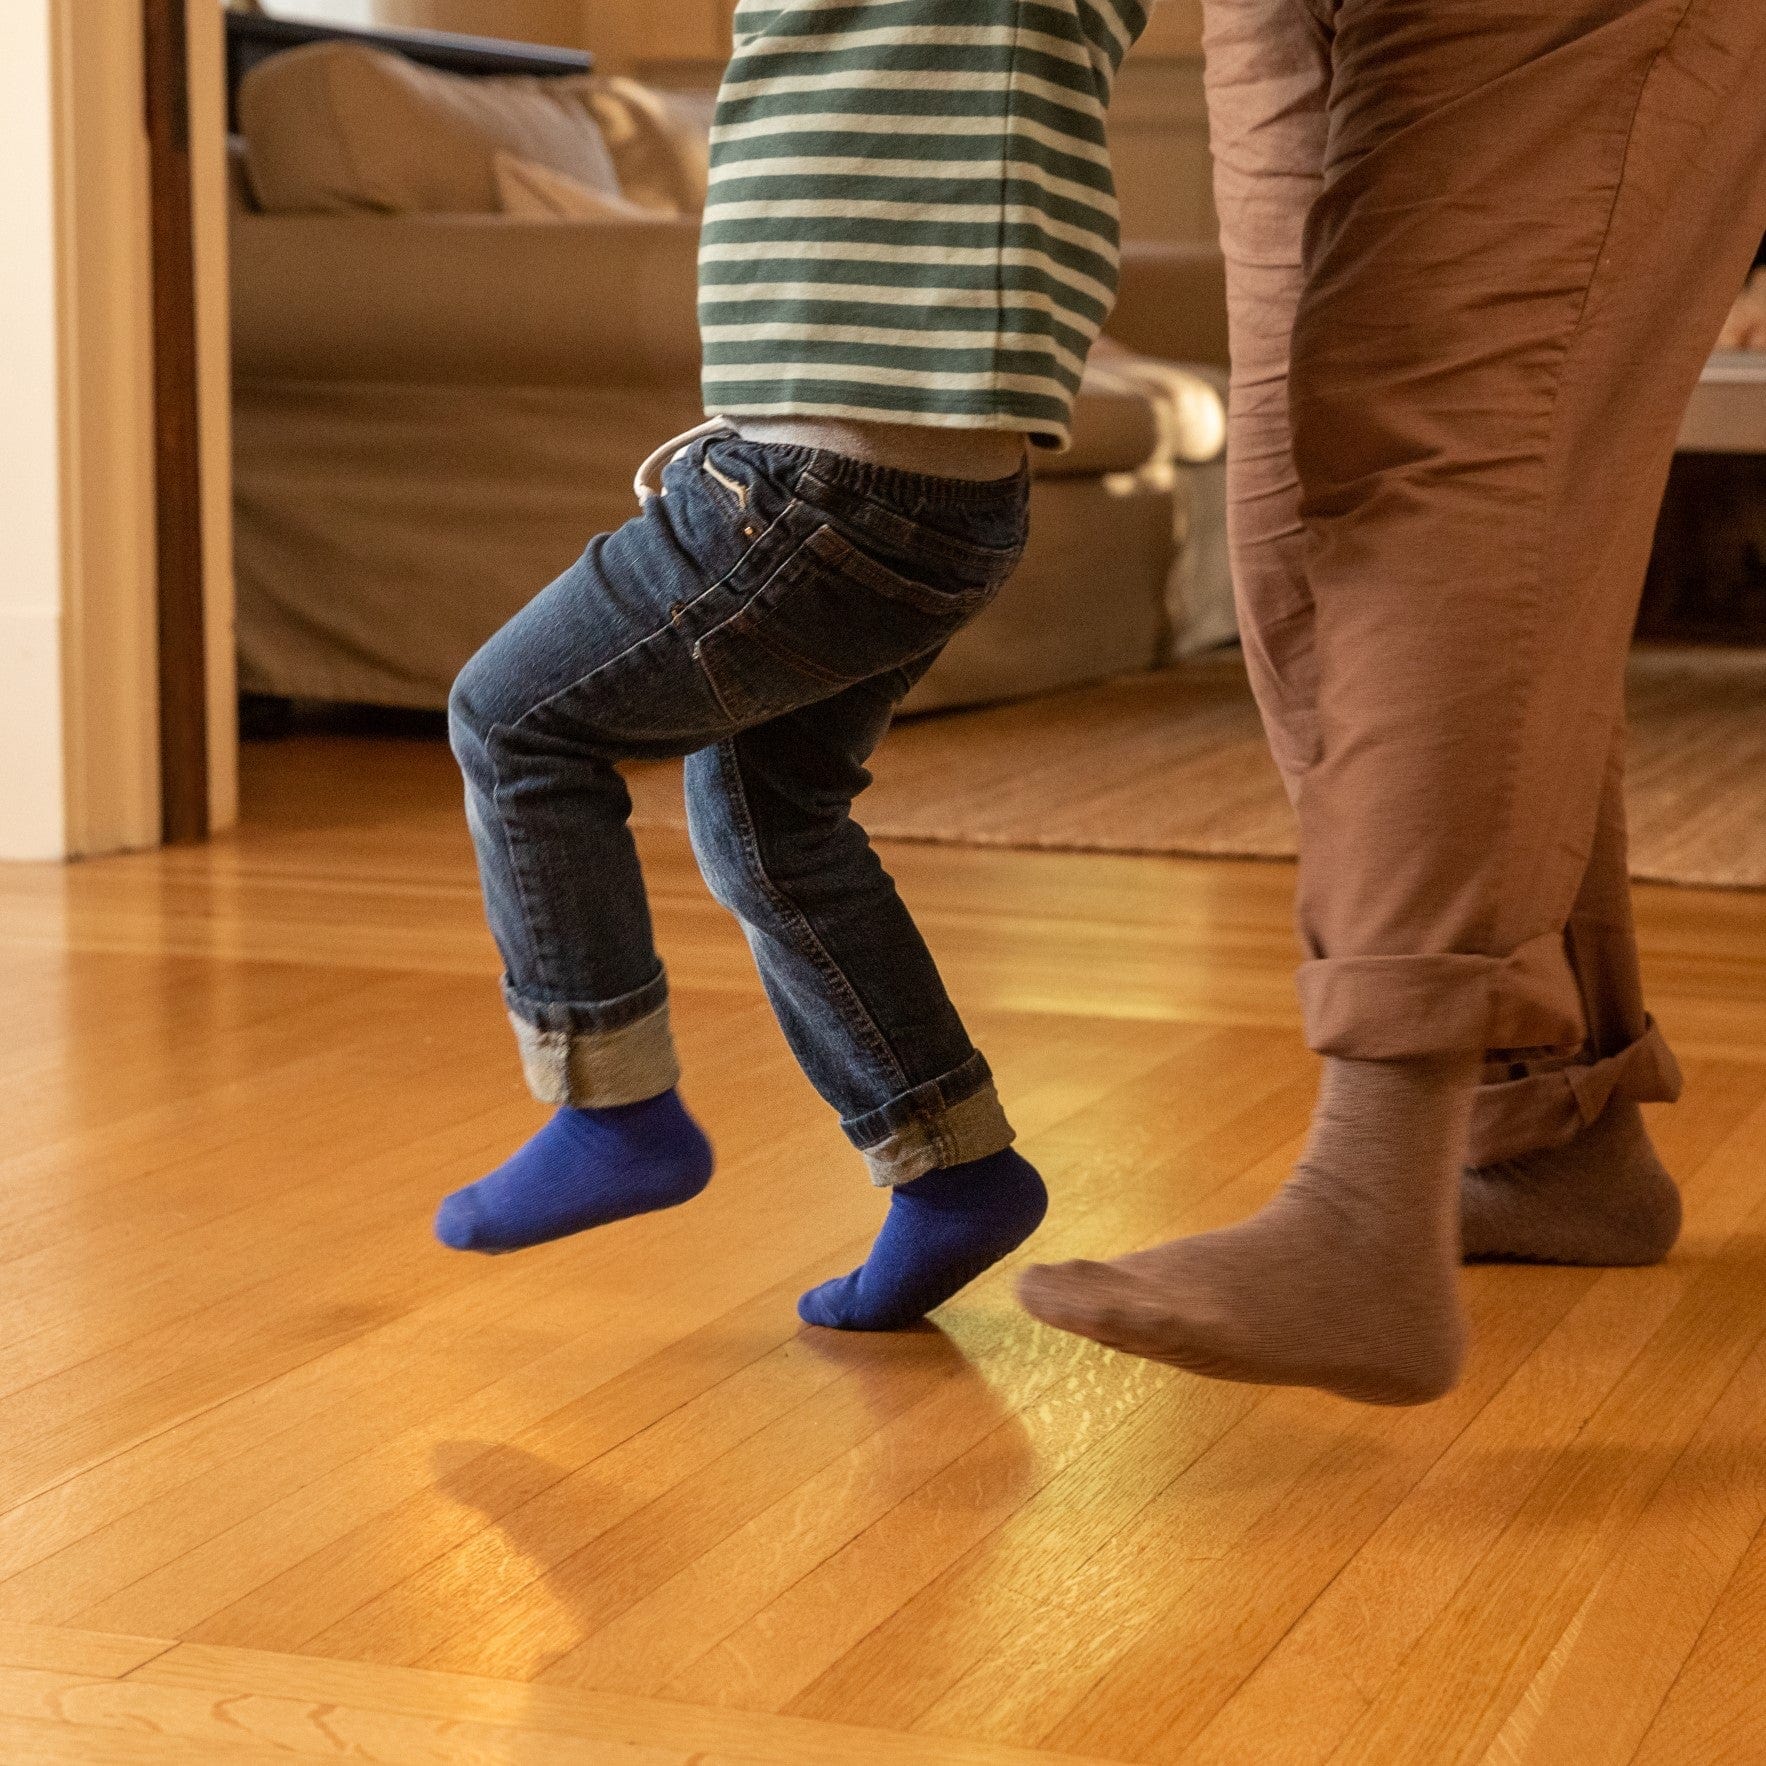 Gripjoy Socks Toddlers & Kids Black Grip Socks - 4 pairs